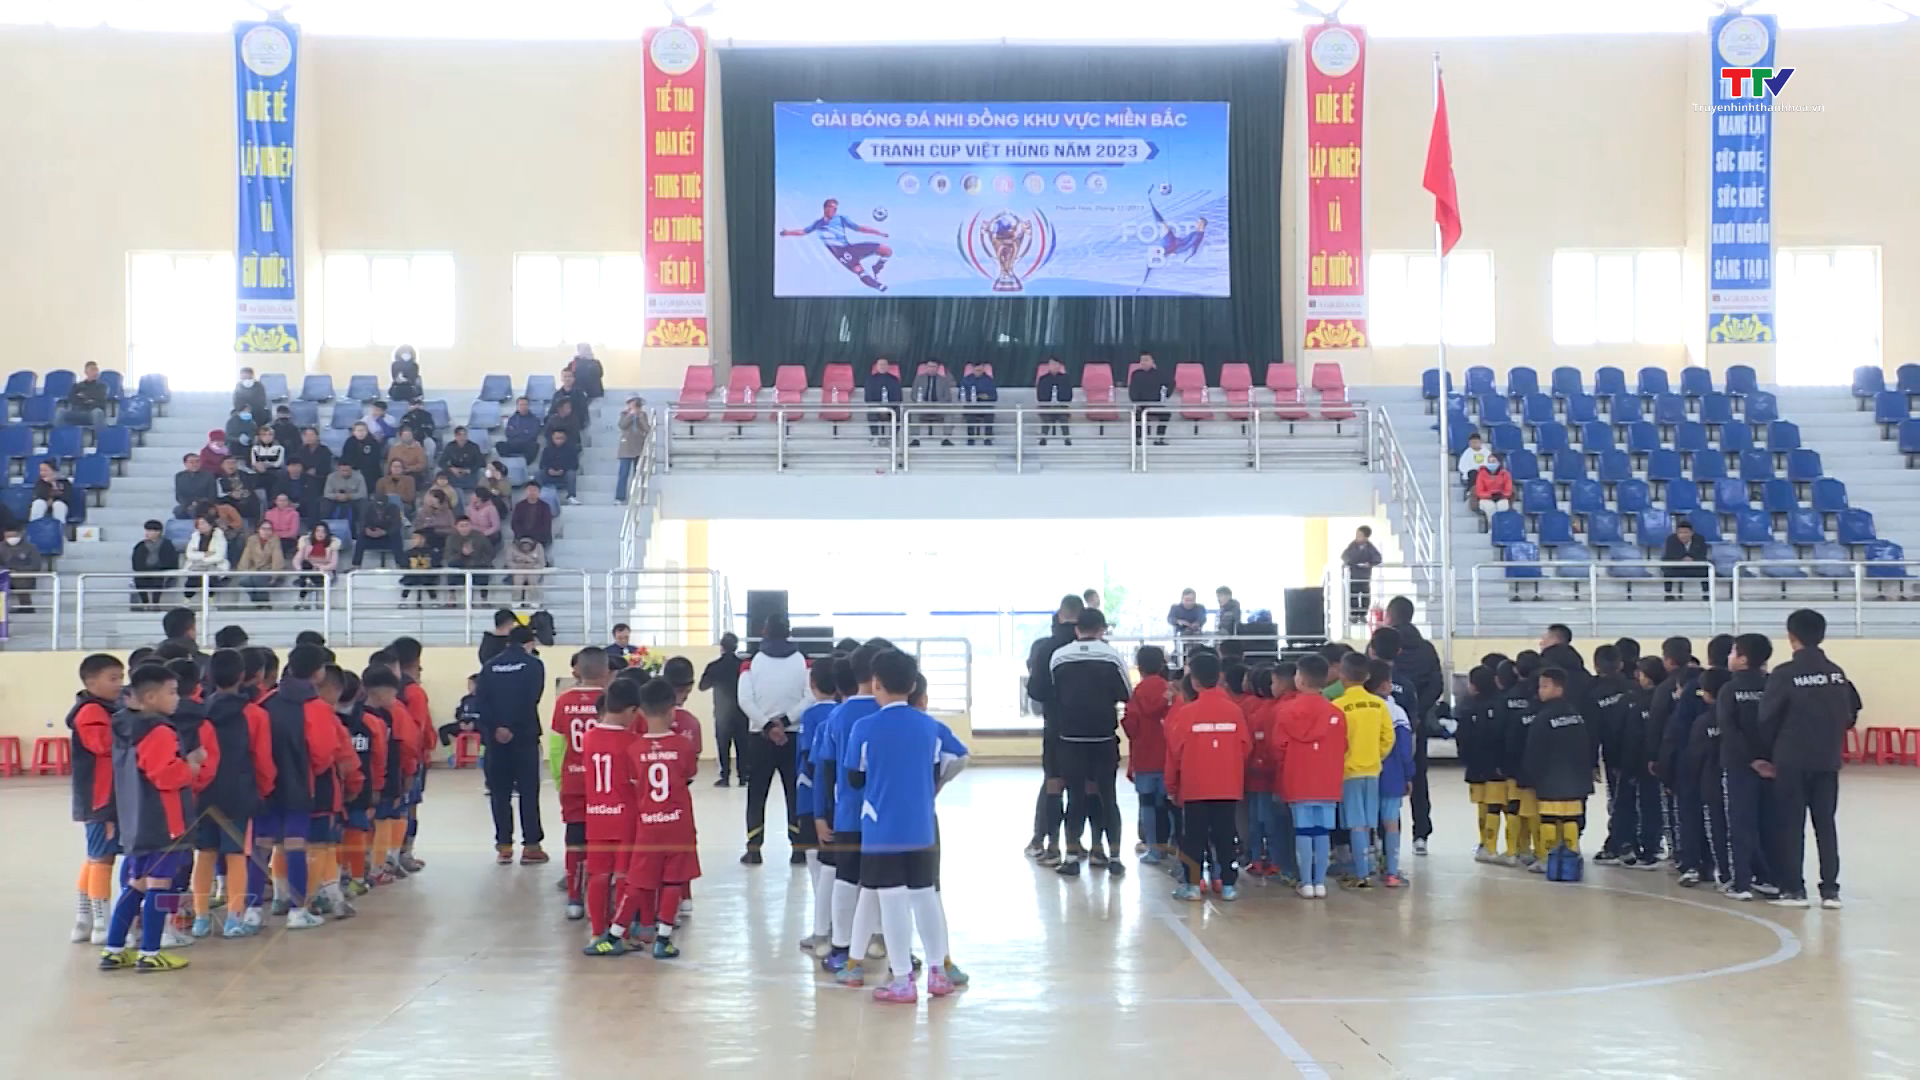 Sôi động Giải bóng đá nhi đồng khu vực miền Bắc – Cúp Việt Hùng năm 2023 - Ảnh 1.